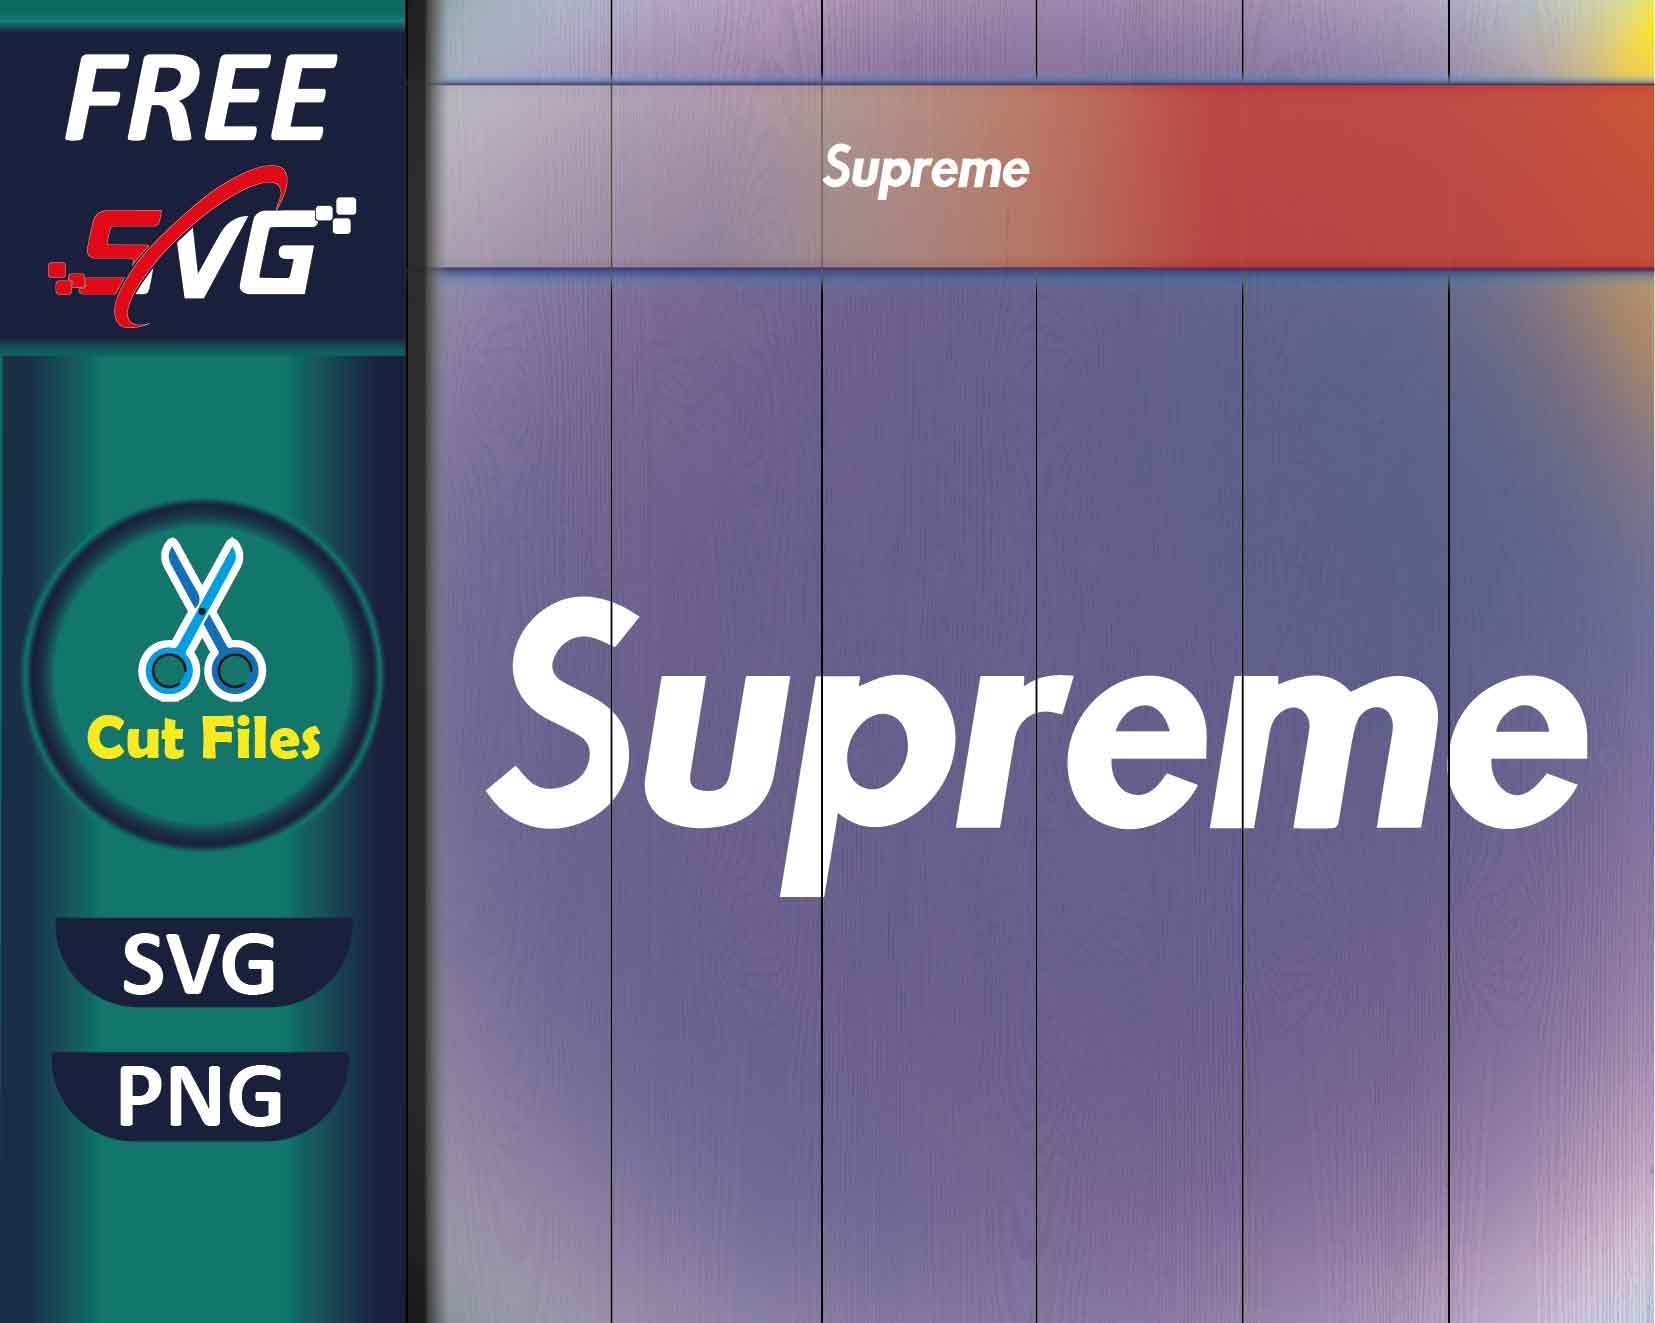 Supreme Letter Style SVG, Supreme PNG